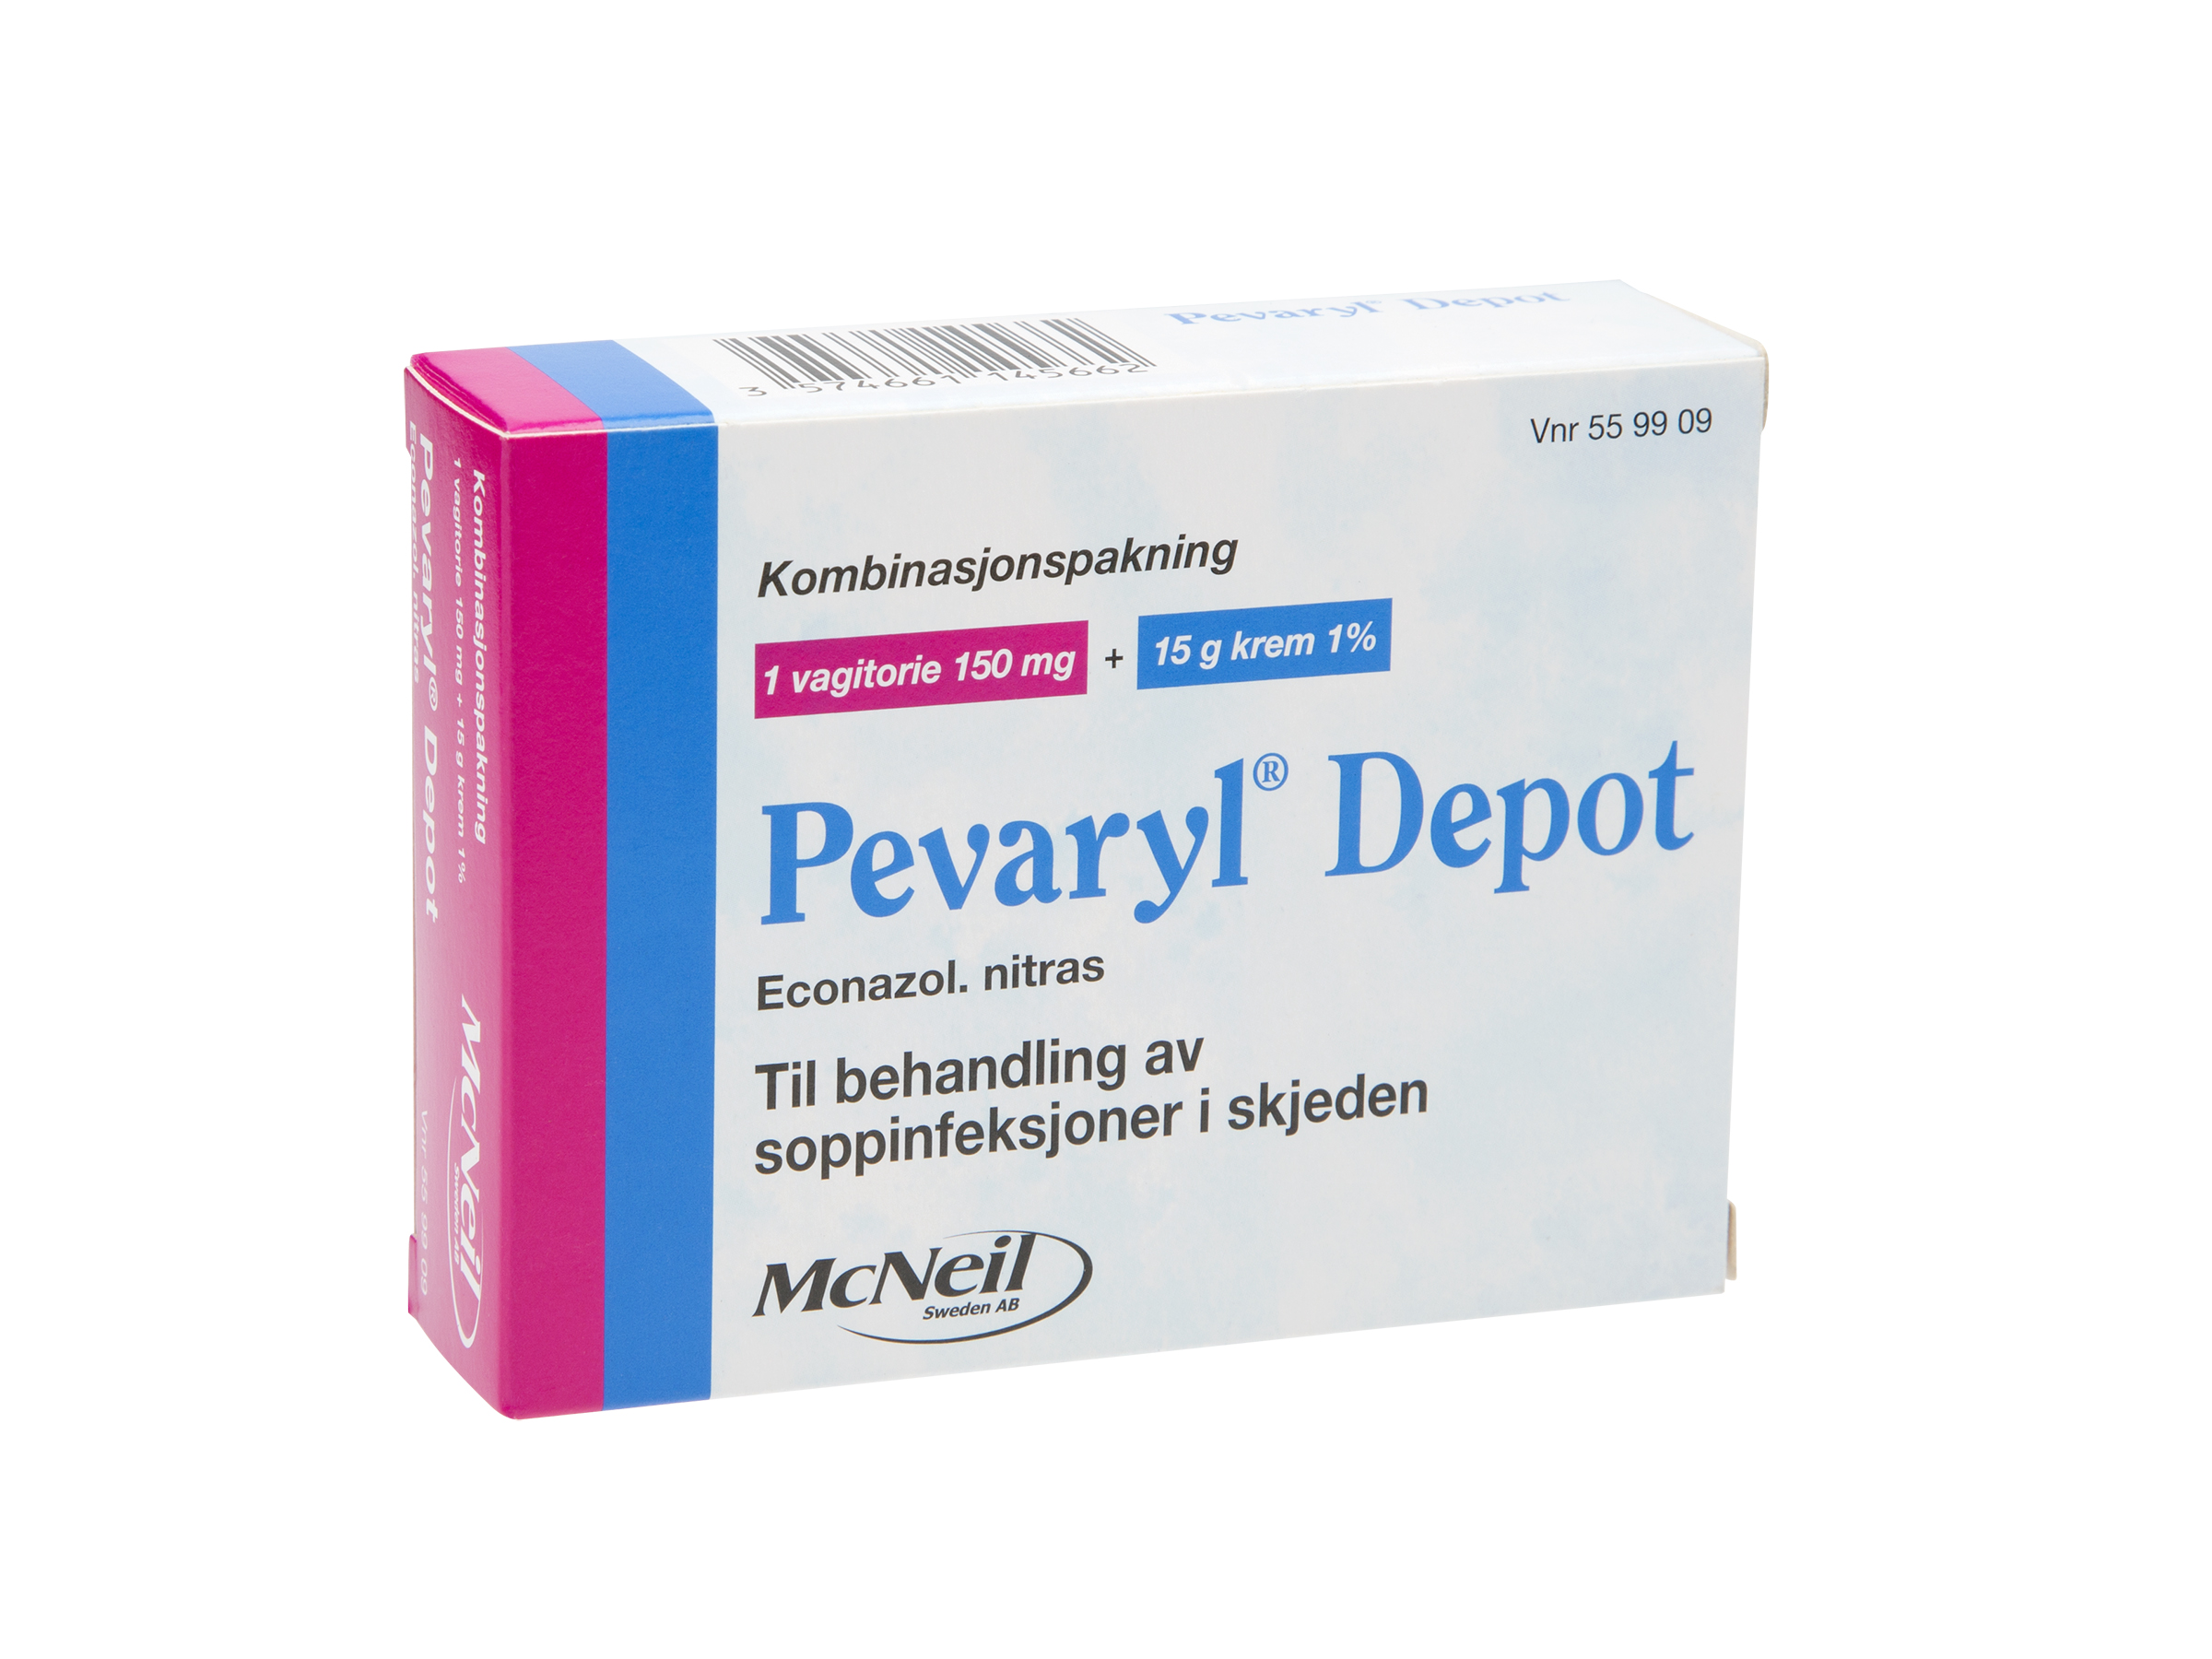 Pevaryl Kombinasjonspakke, 150 mg vagitorie og 15 gram 1% krem